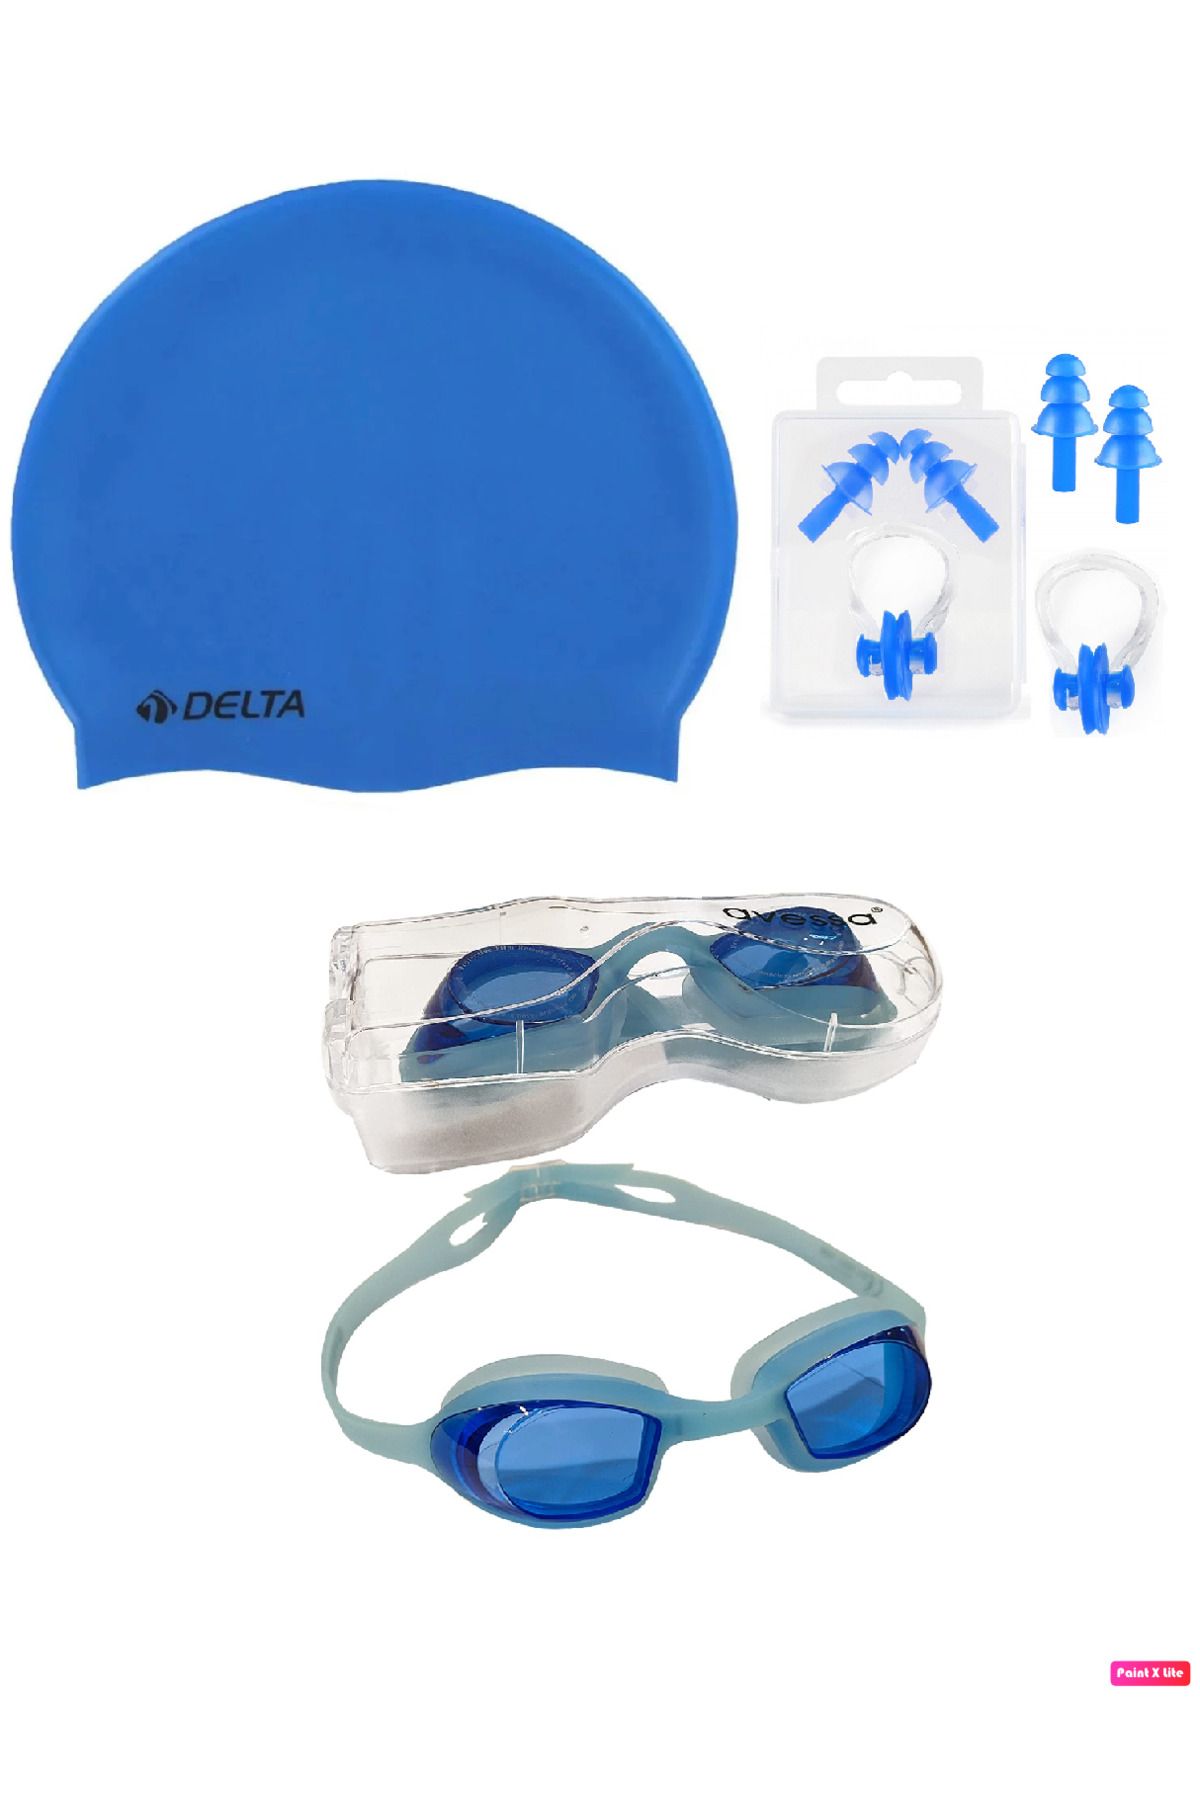 Avessa 3'lü Yetişkin Unisex Havuz Seti Yüzücü Deniz Gözlüğü Havuz Gözlüğü + Bone + Kulak Burun Tıkacı Mavi